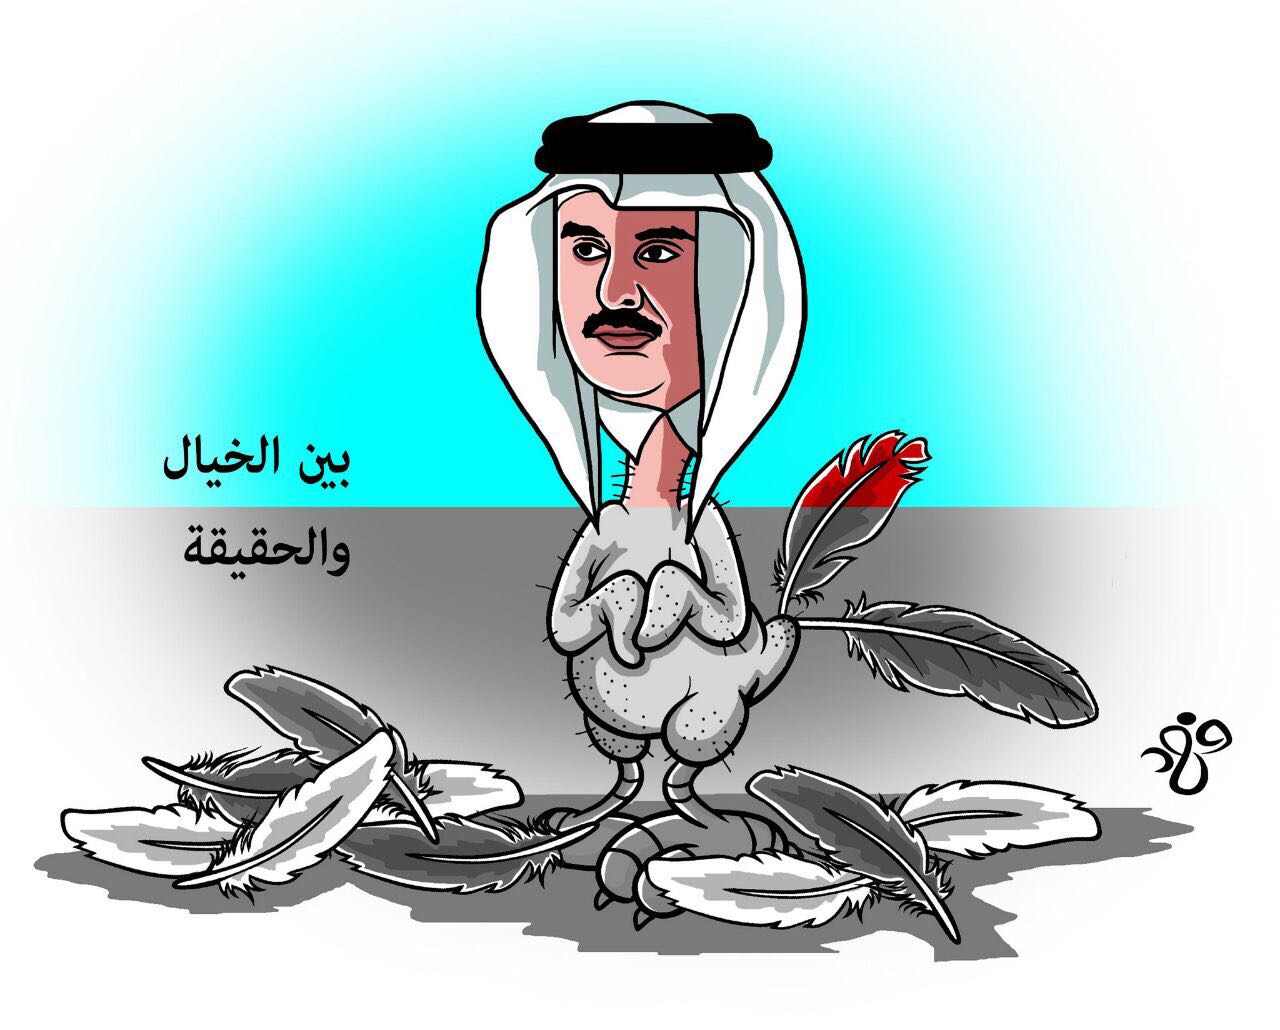 كاريكاتور يظهر تميم كمثل الدجاجة منتفة الريش